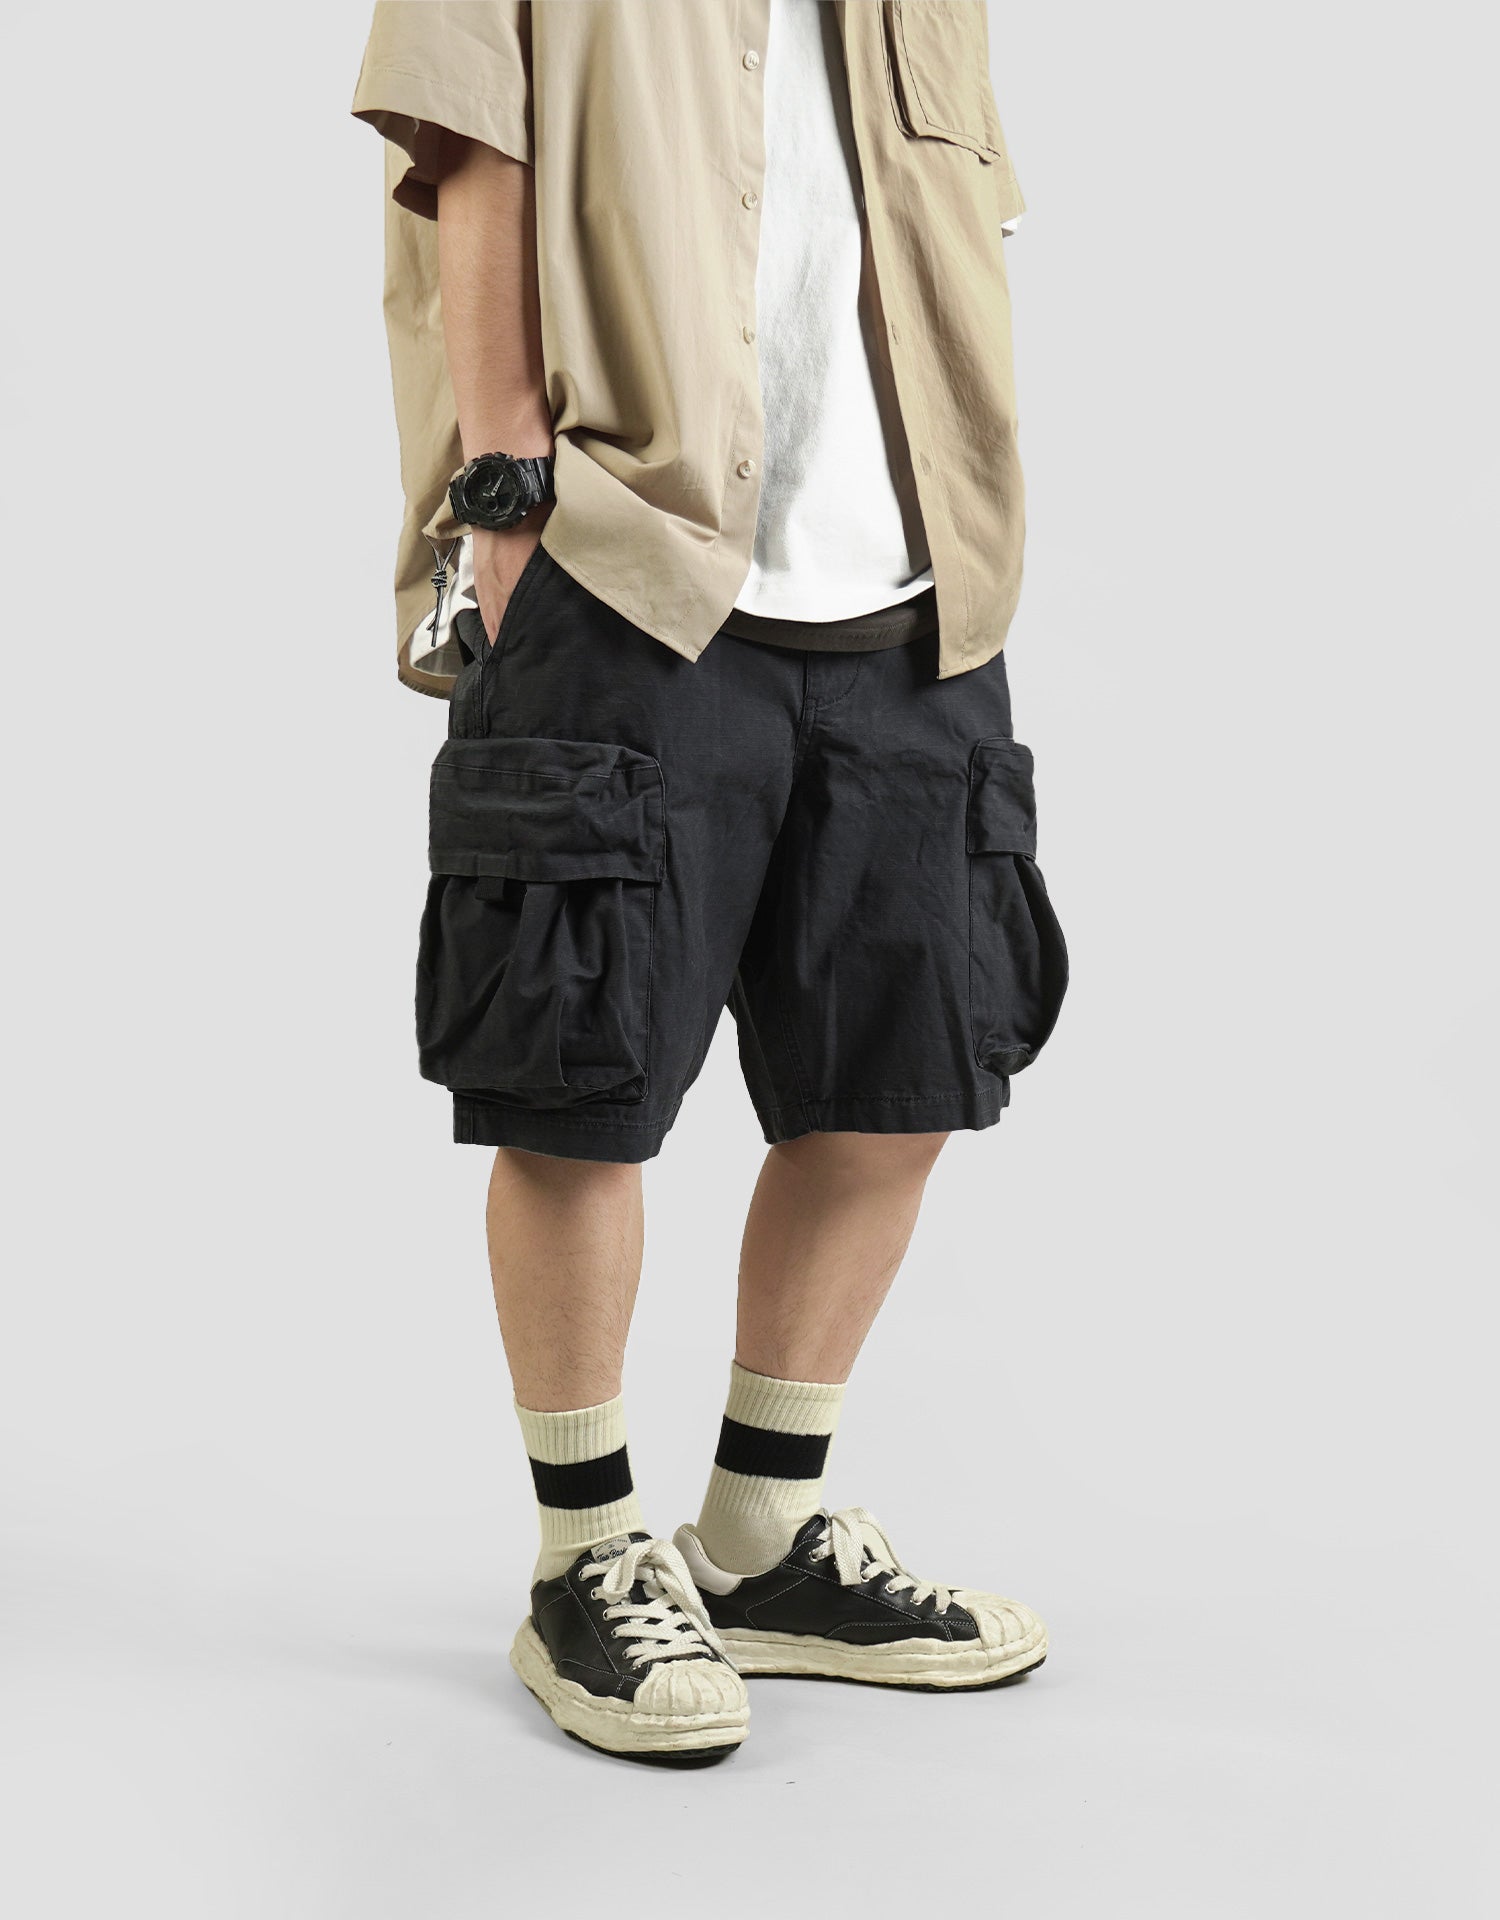 TopBasics 3D Pockets Cargo Shorts